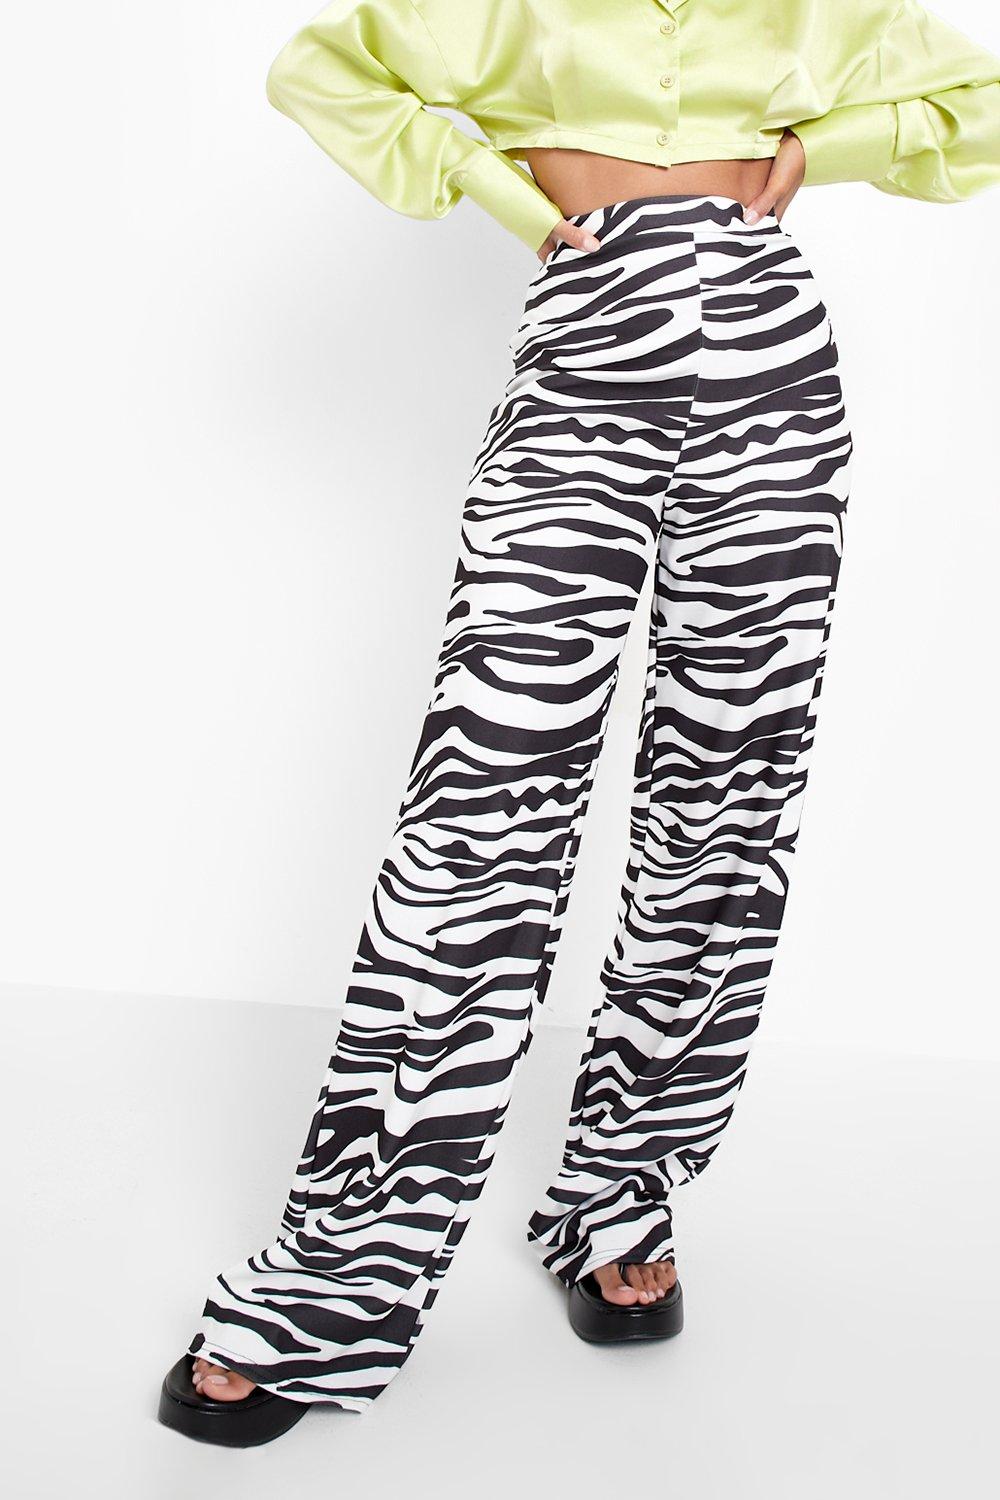 Access Fashion  Wide-leg pants in zebra print